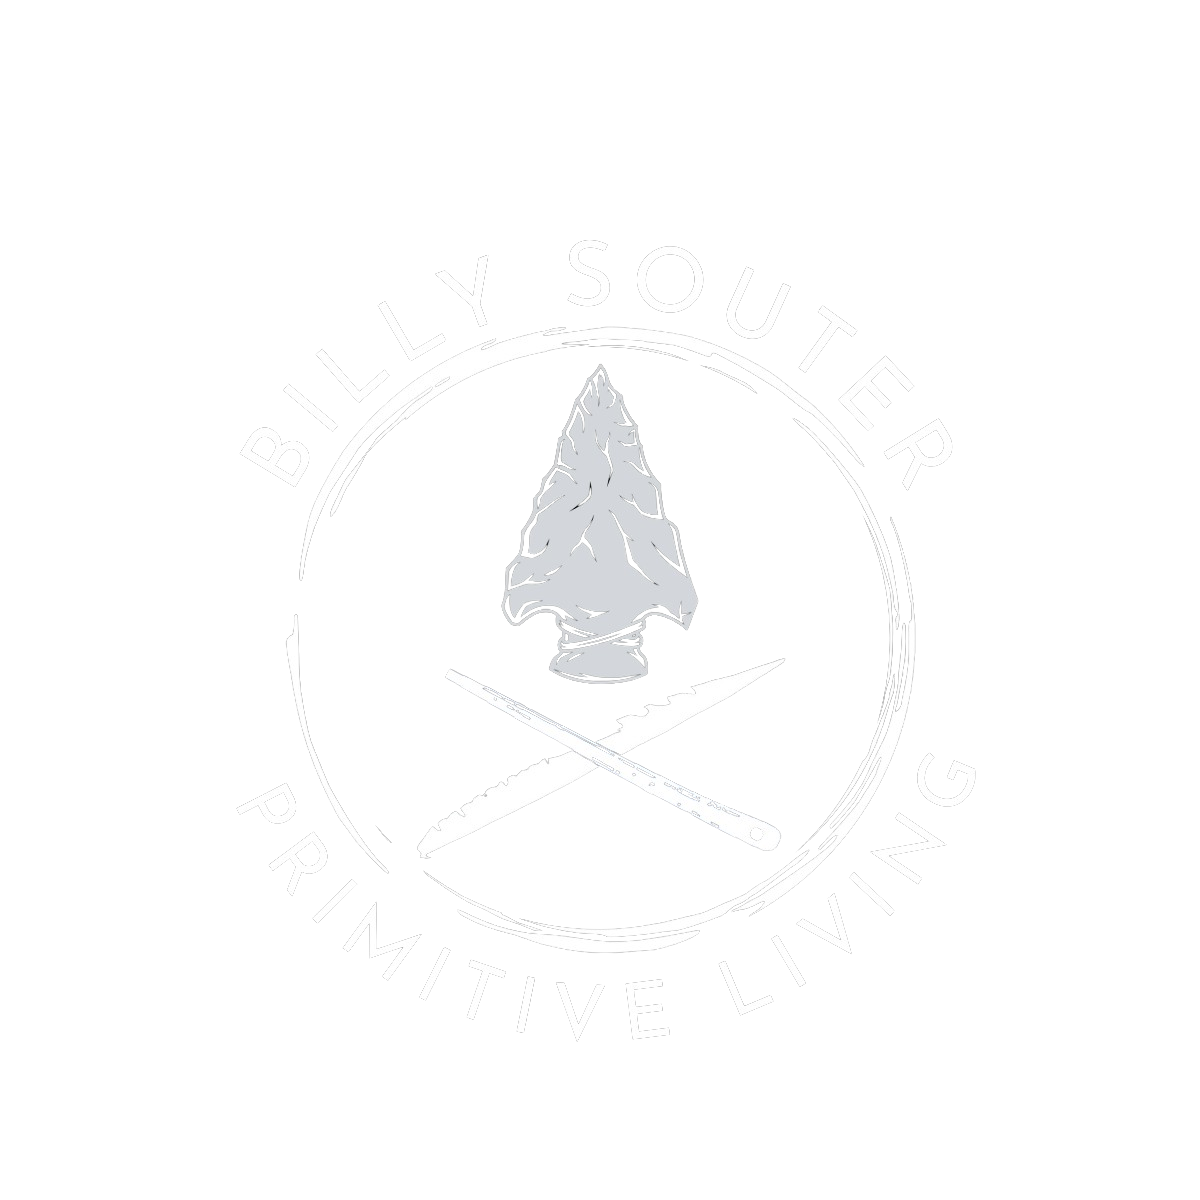 Billy Souter - Primitive Living